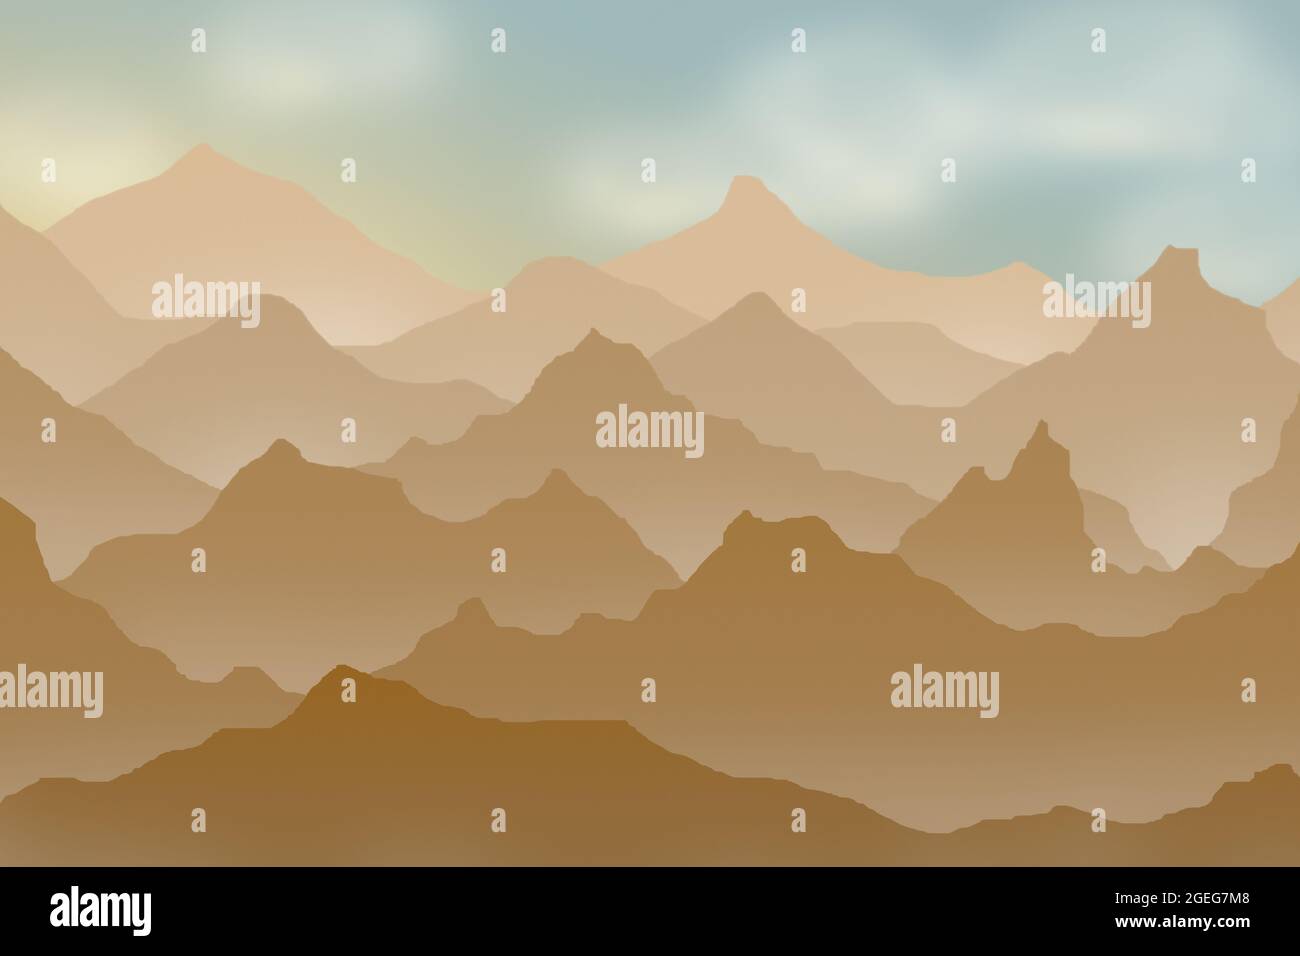 Illustration d'un paysage avec de nombreuses montagnes avec plusieurs couches de profondeur. Entre quelques couches de montagnes il y a du brouillard et le ciel est clair. Banque D'Images